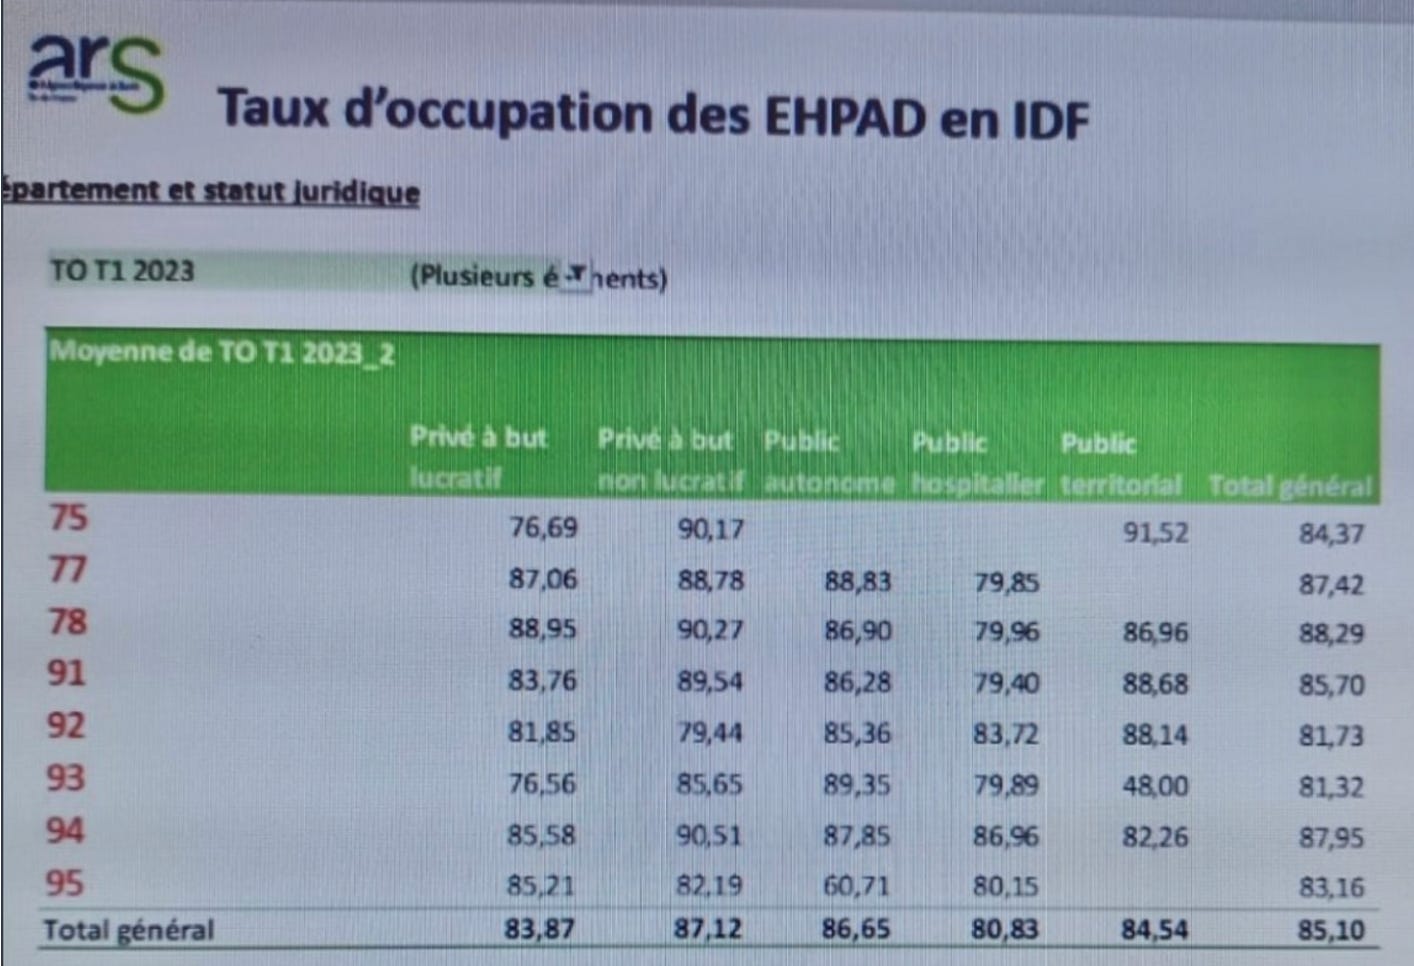 taux d'occupation des ehpad en idf T12023